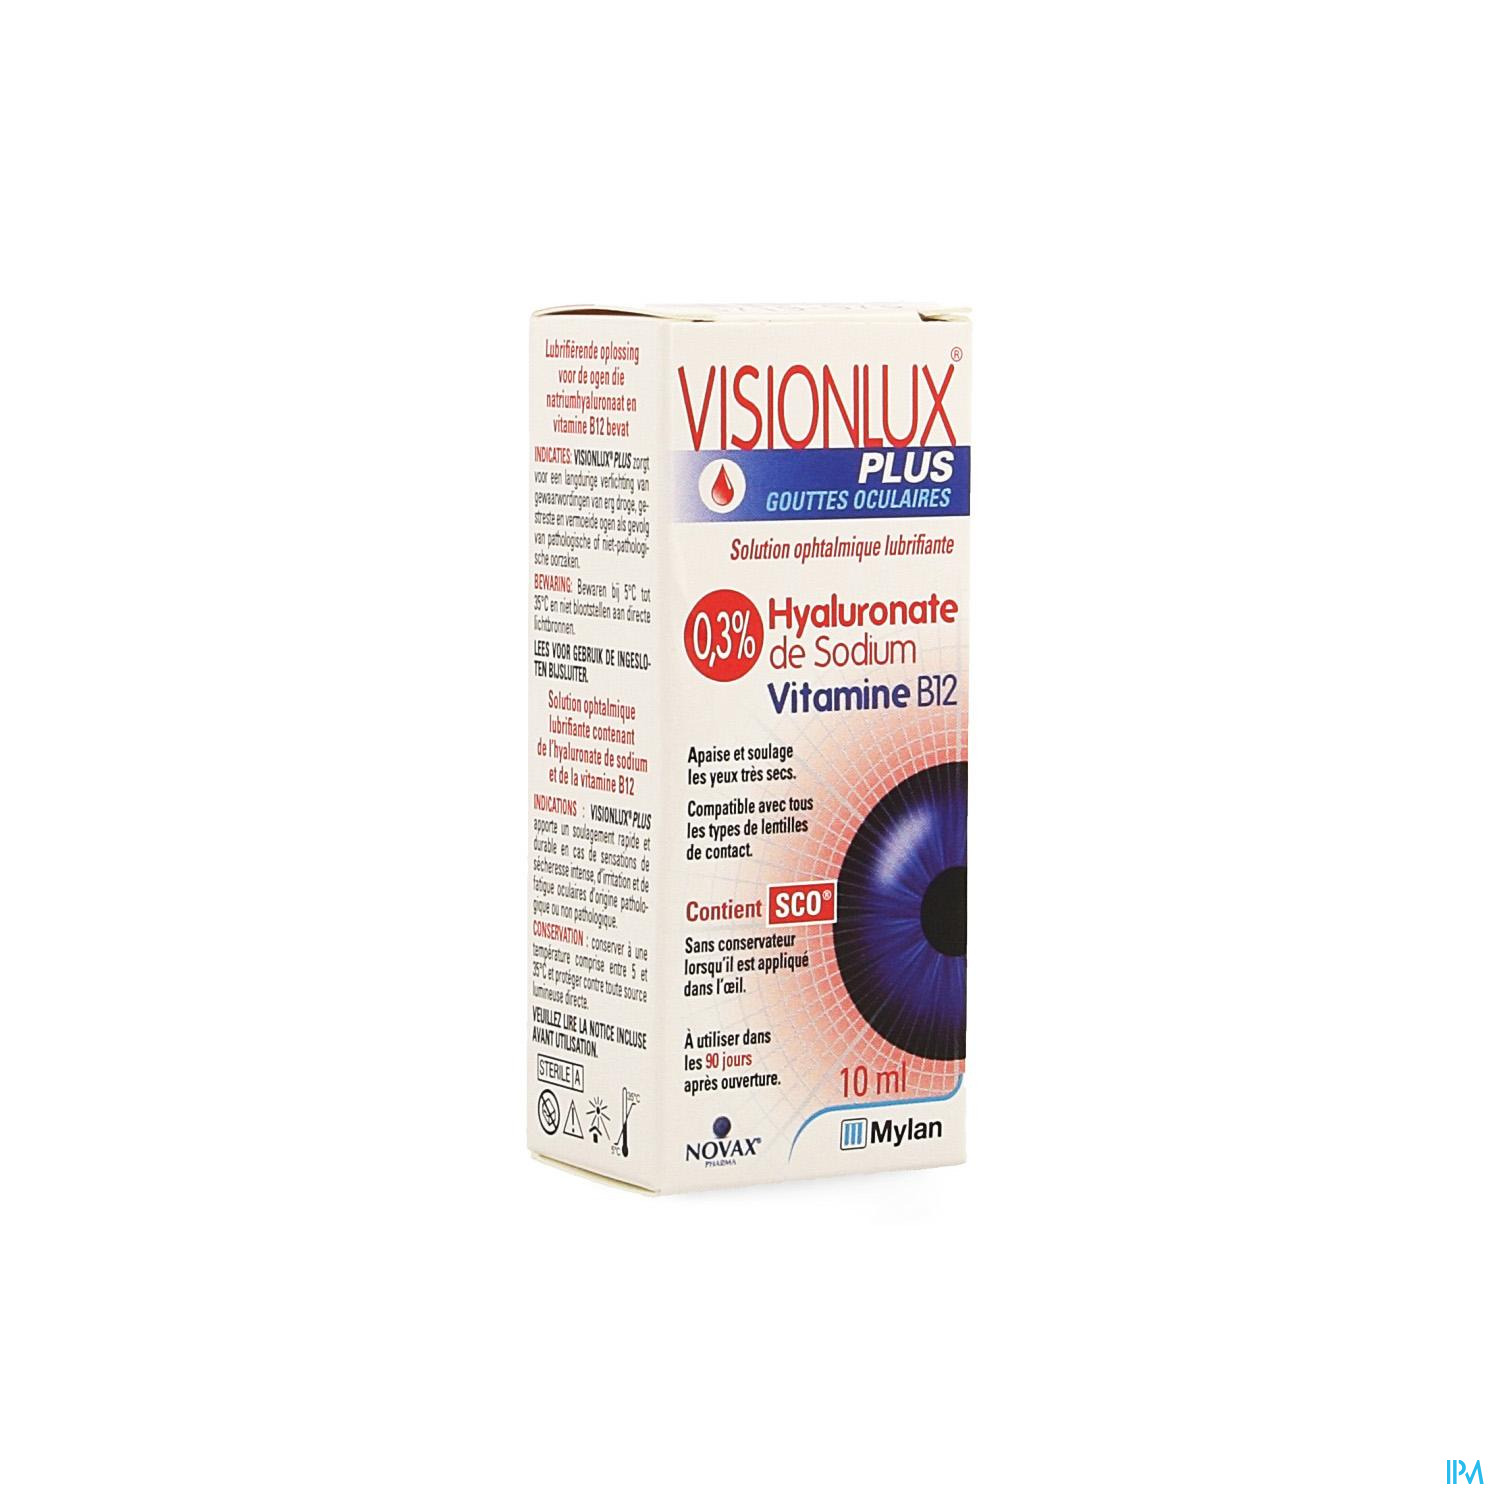 Visionlux Plus Gouttes Yeux Fl 1 X 10ml - Collyre - Yeux - Beauté